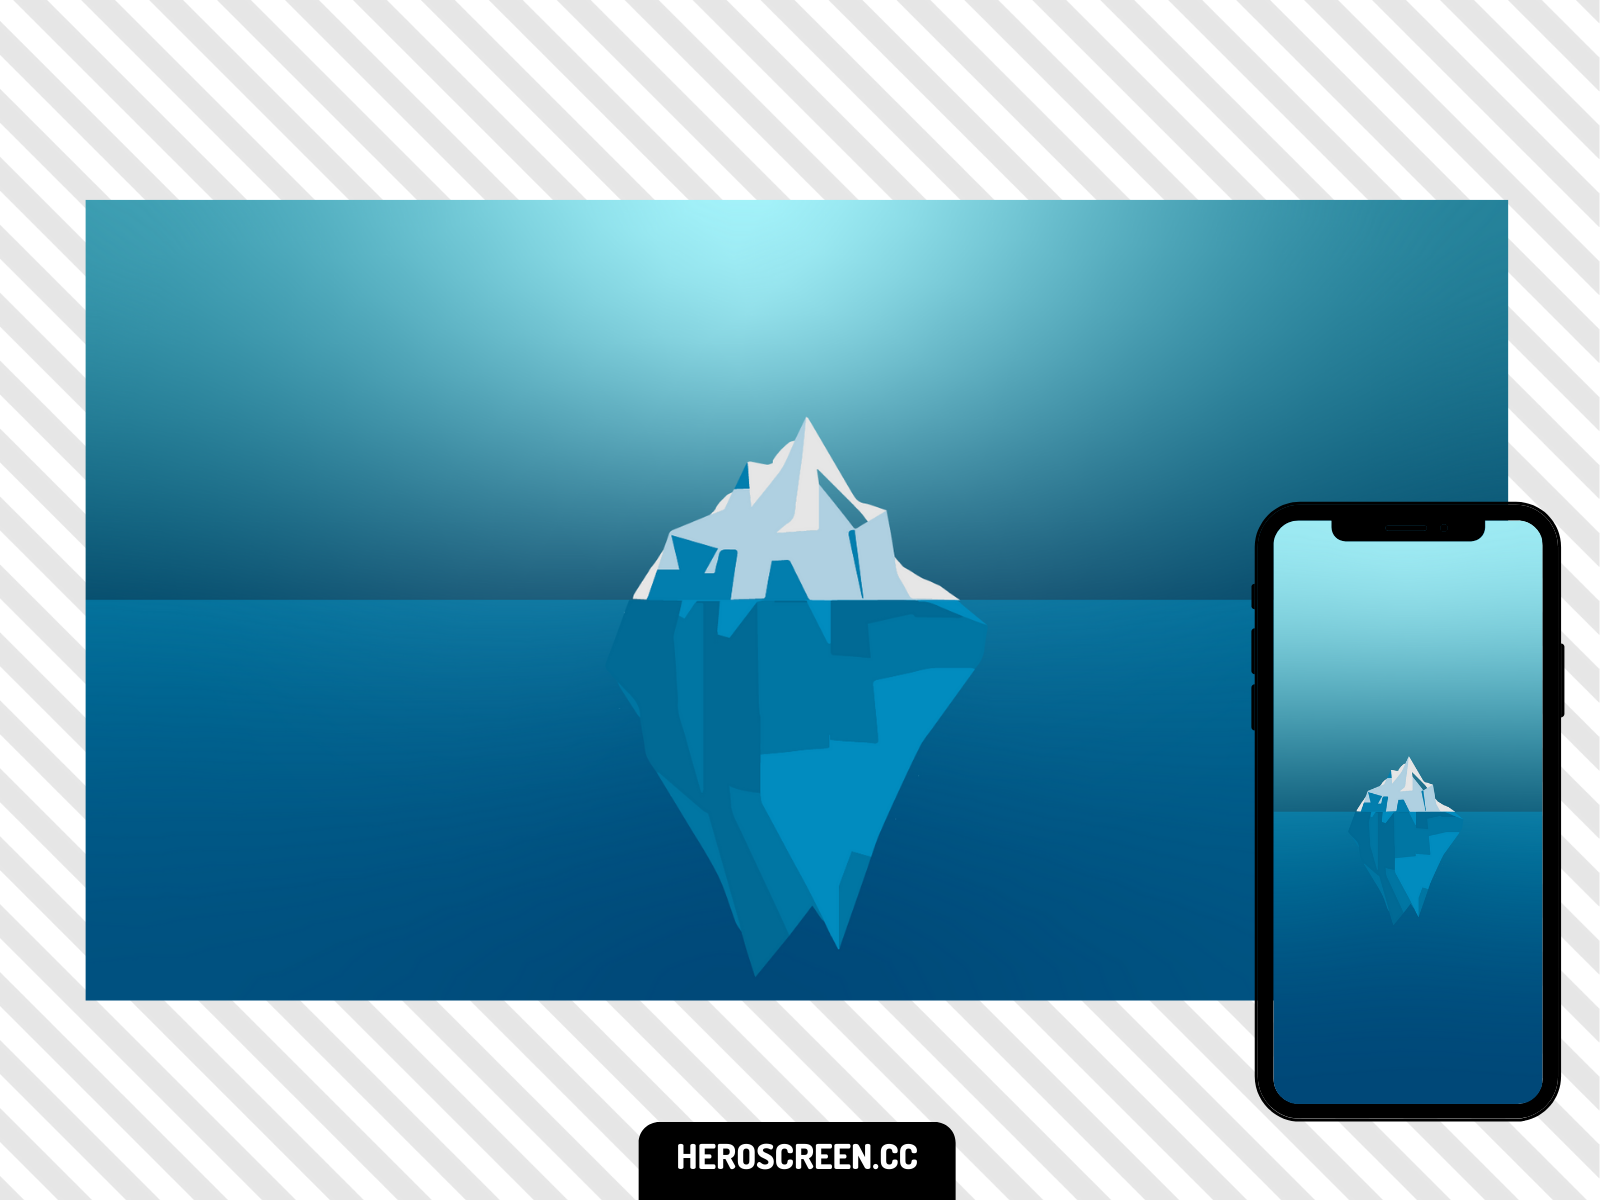 Iceberg Minimal Wallpapers